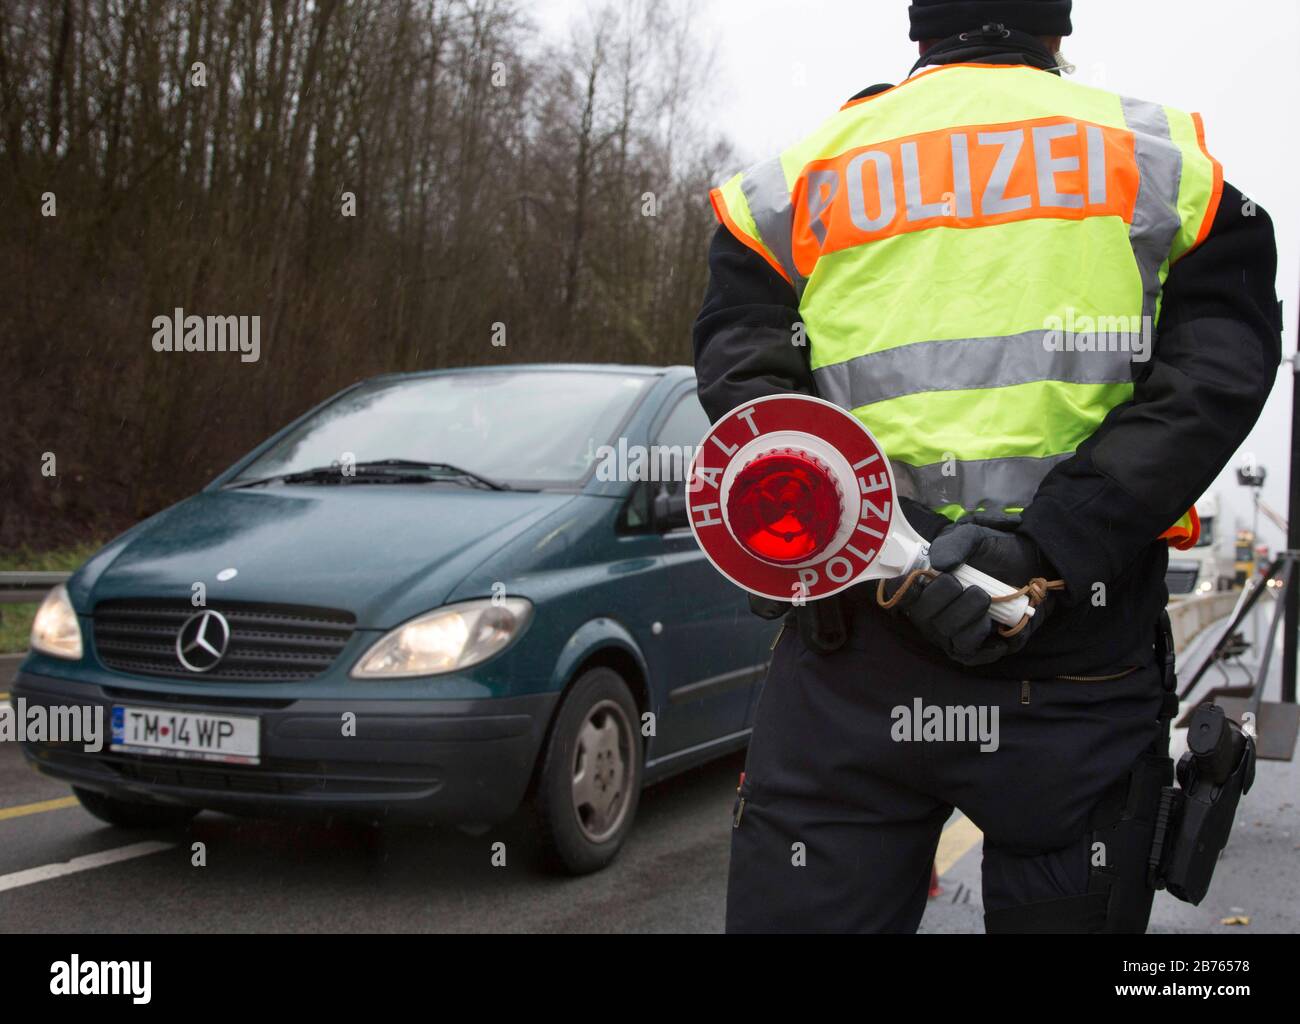 Polizeikelle -Fotos und -Bildmaterial in hoher Auflösung – Alamy